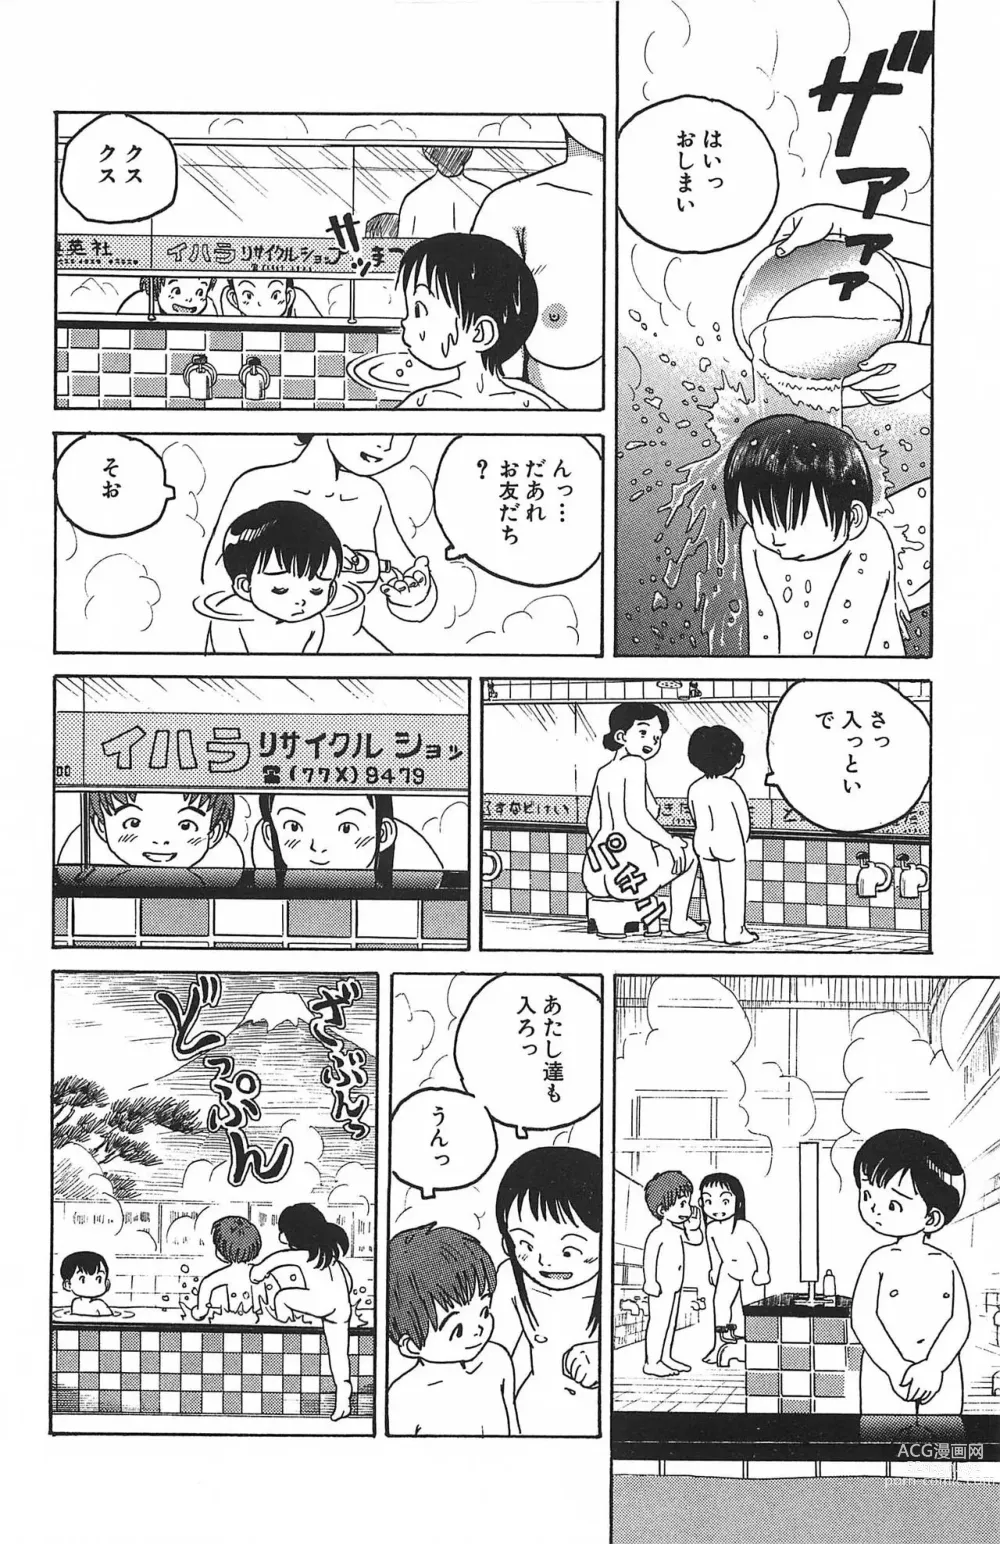 Page 12 of manga Dokidoki